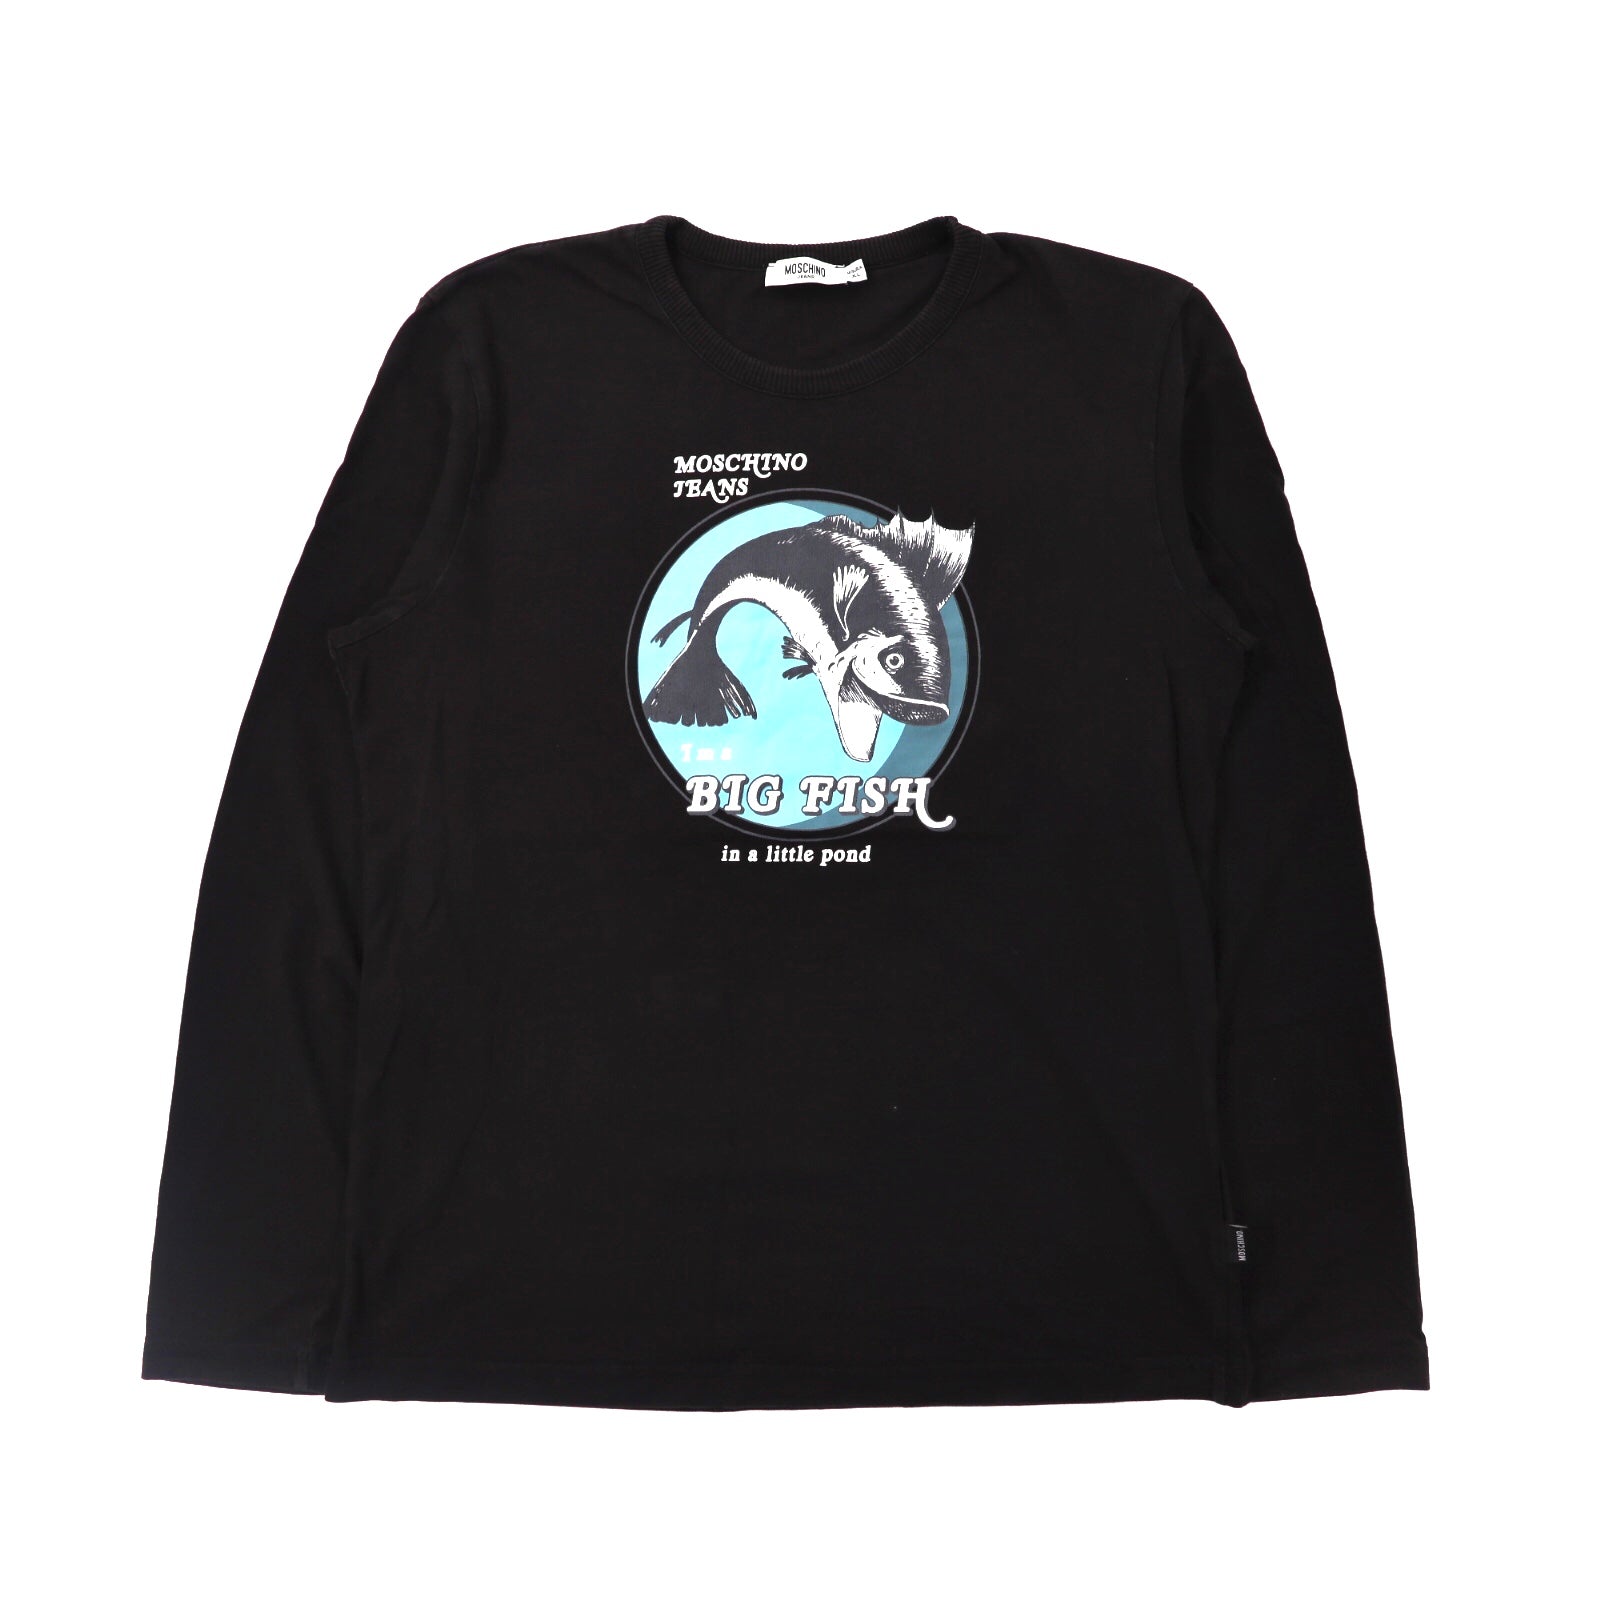 MOSCHINO JEANS ロングスリーブTシャツ XL ブラック BIG FISHプリント 90年代